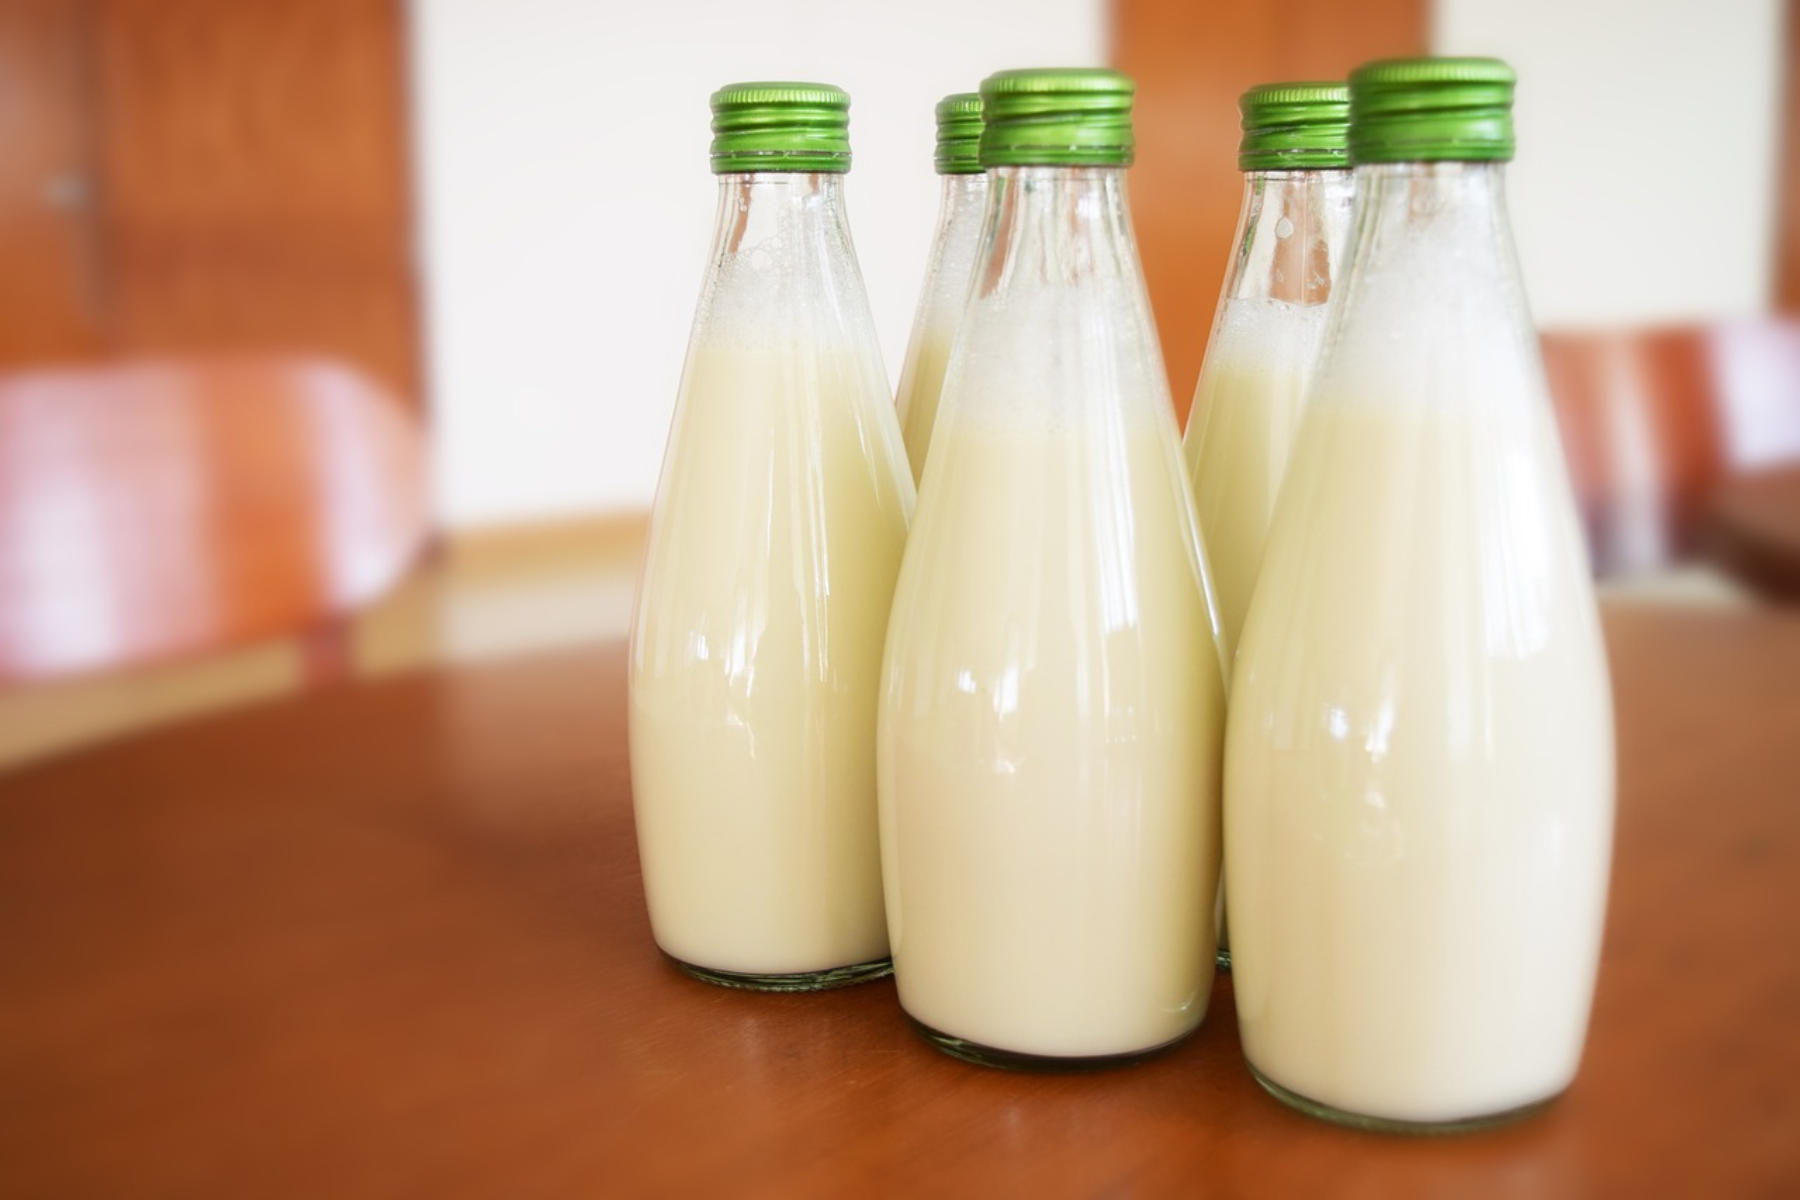 Γάλα: Οι πωλήσεις ακατέργαστου γάλακτος αυξάνονται. Ποιοι είναι,όμως ,οι κίνδυνοι; 